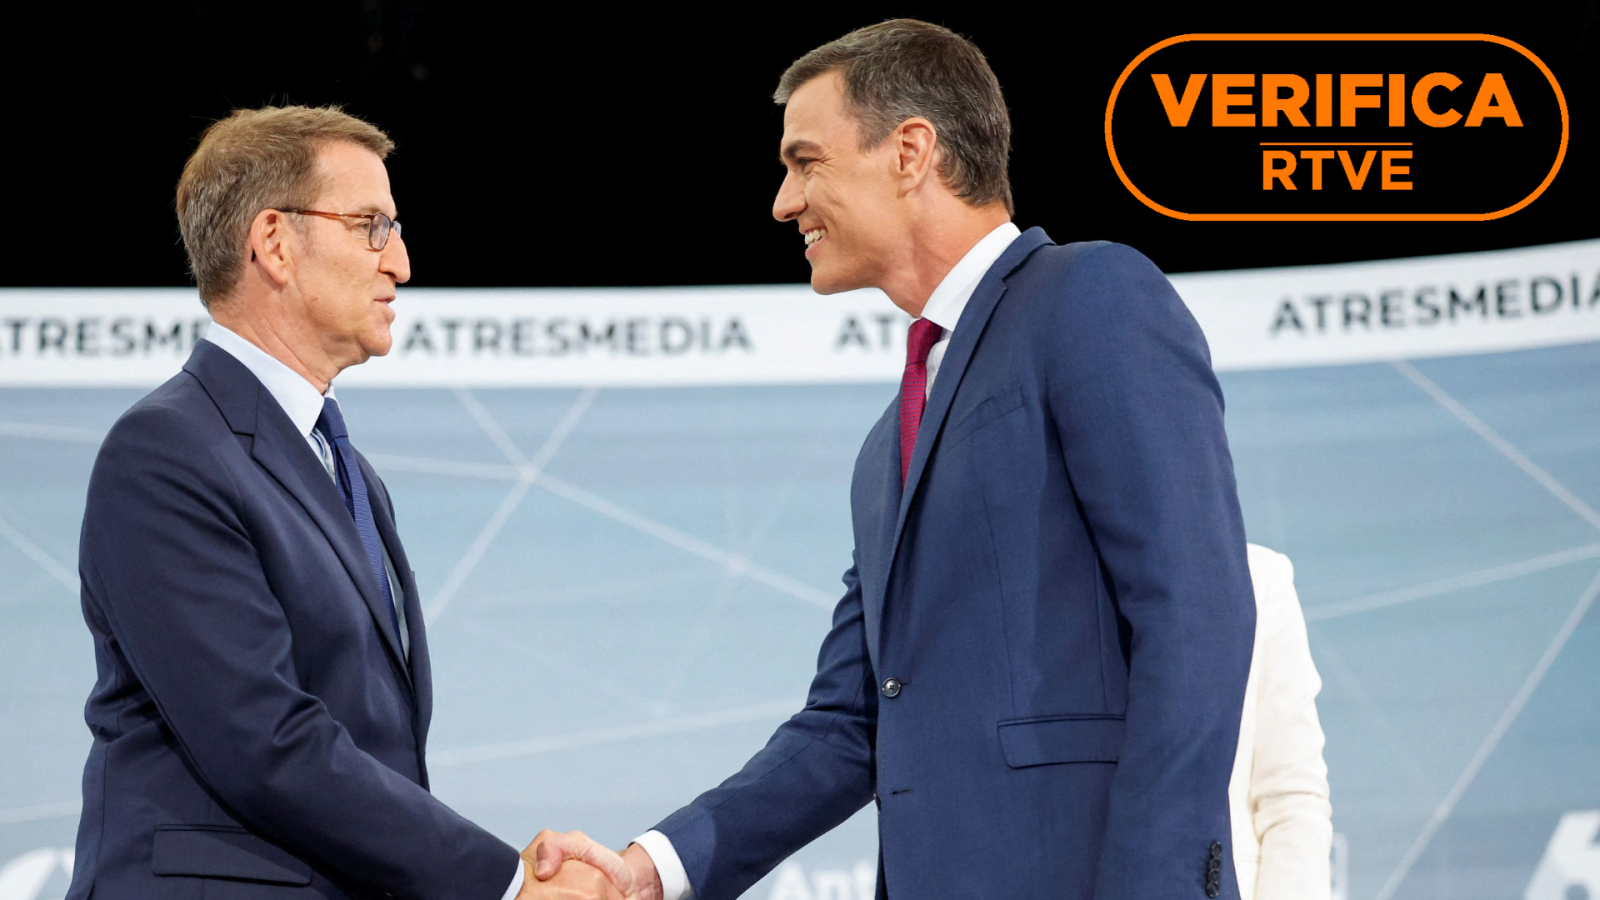 Feijóo y Sánchez en el debate cara a cara de Atresmedia, con el sello de VerificaRTVE en naranja